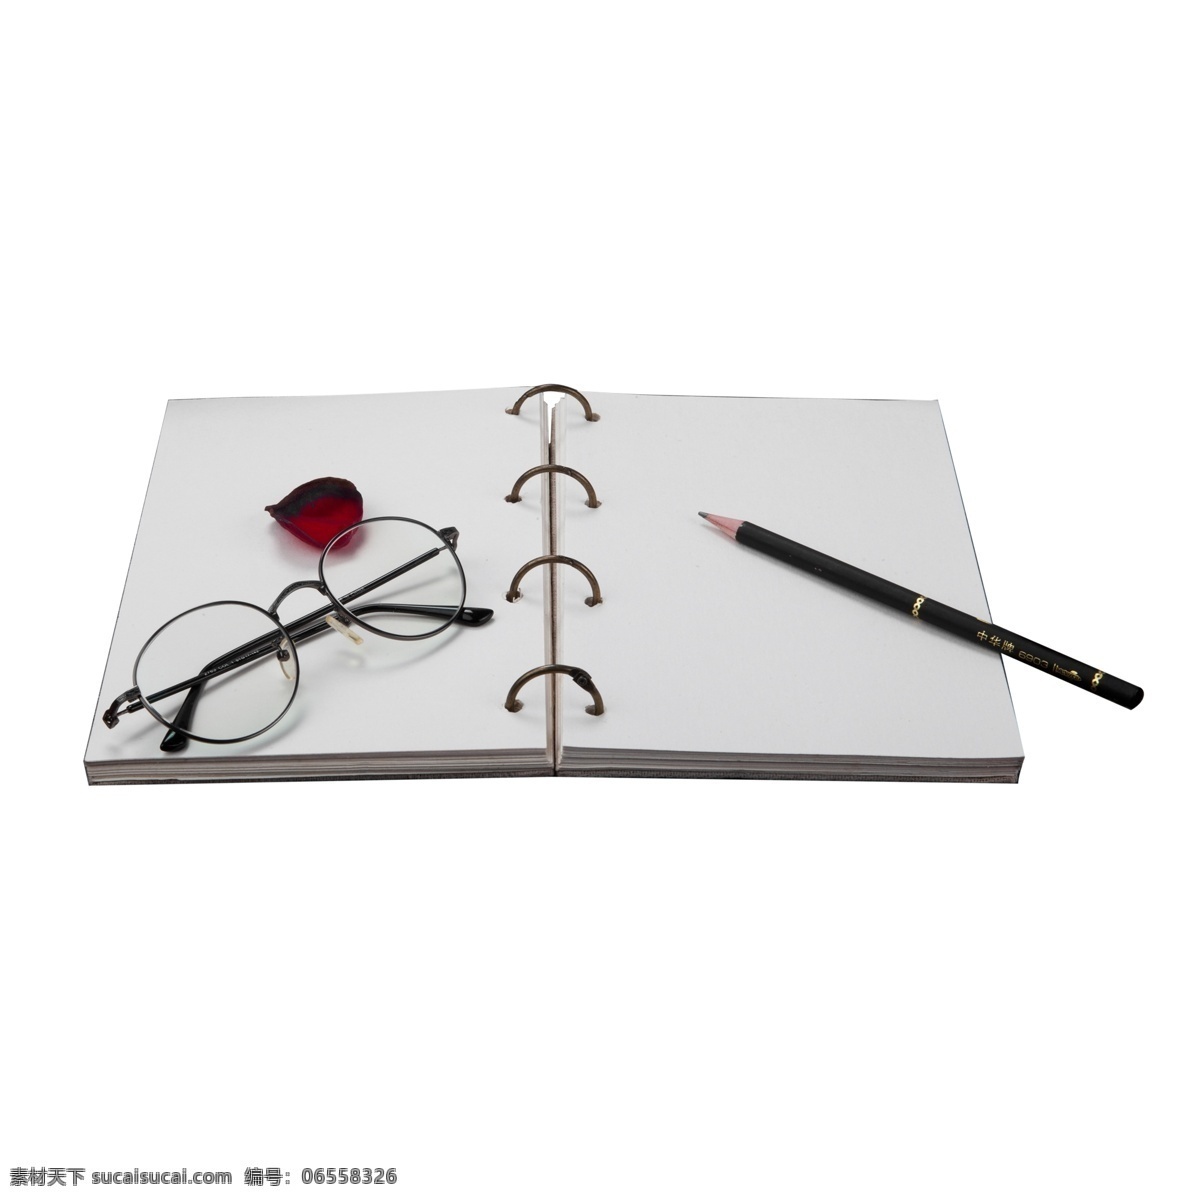 灰色 打开 笔记本 元素 创意 书法 红色花瓣 黑色铅笔 记录 装饰 爱情 表白 金属 铅笔 文具 边框